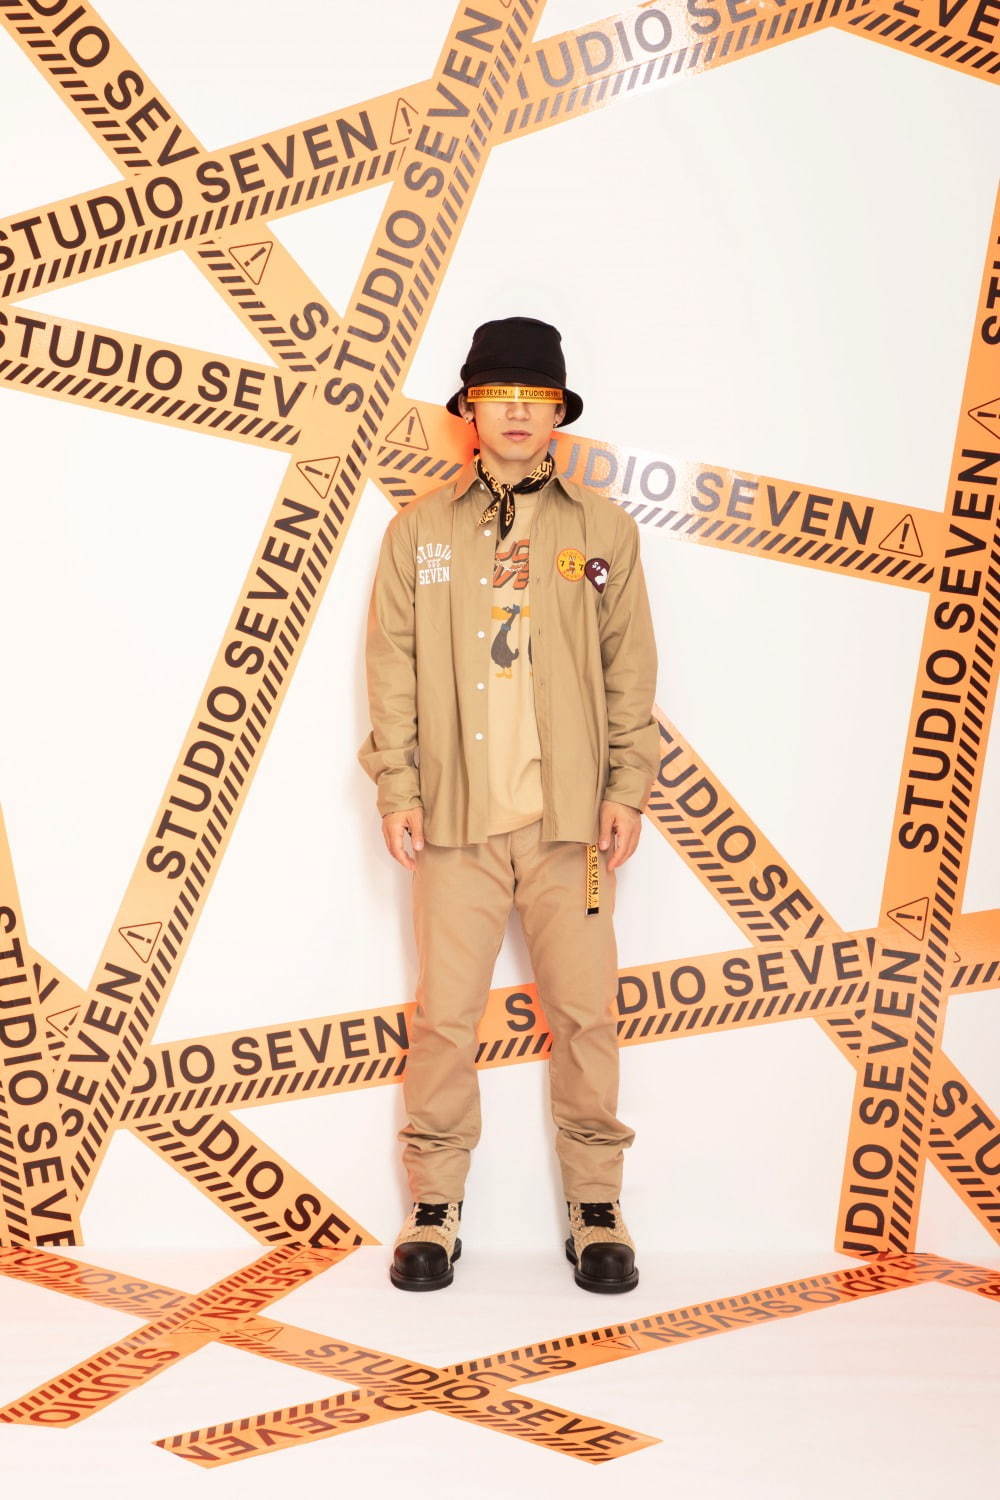 スタジオ セブン(STUDIO SEVEN) 2019-20年秋冬ウィメンズ&メンズコレクション  - 写真10